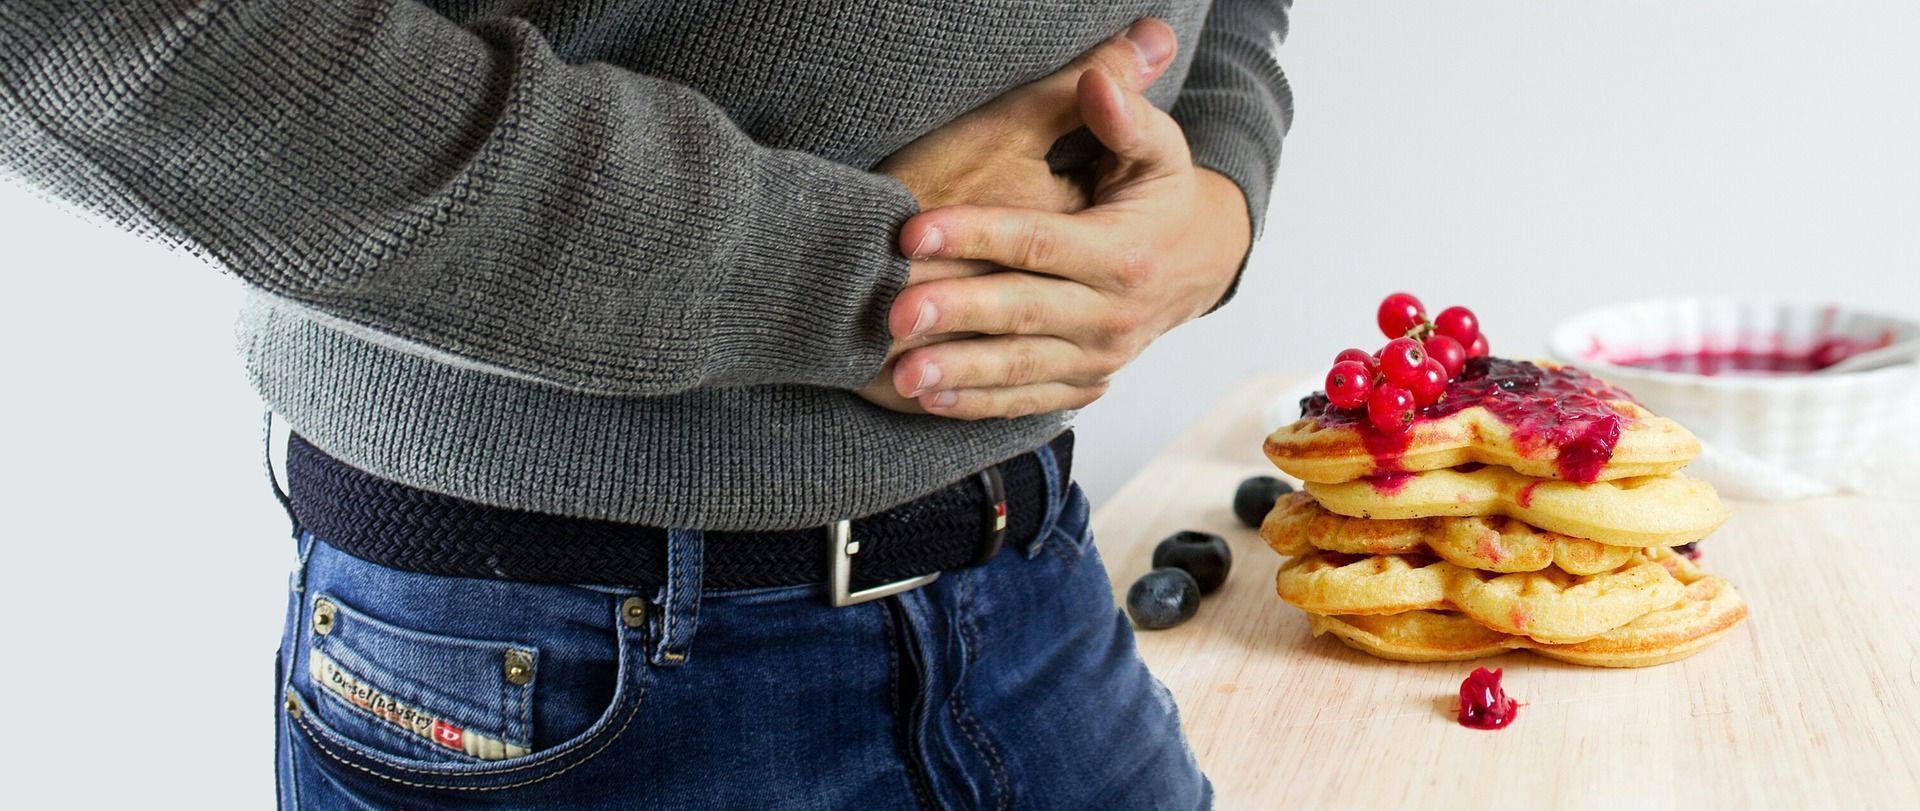 Dor de estômago depois de comer, quais são as causas?